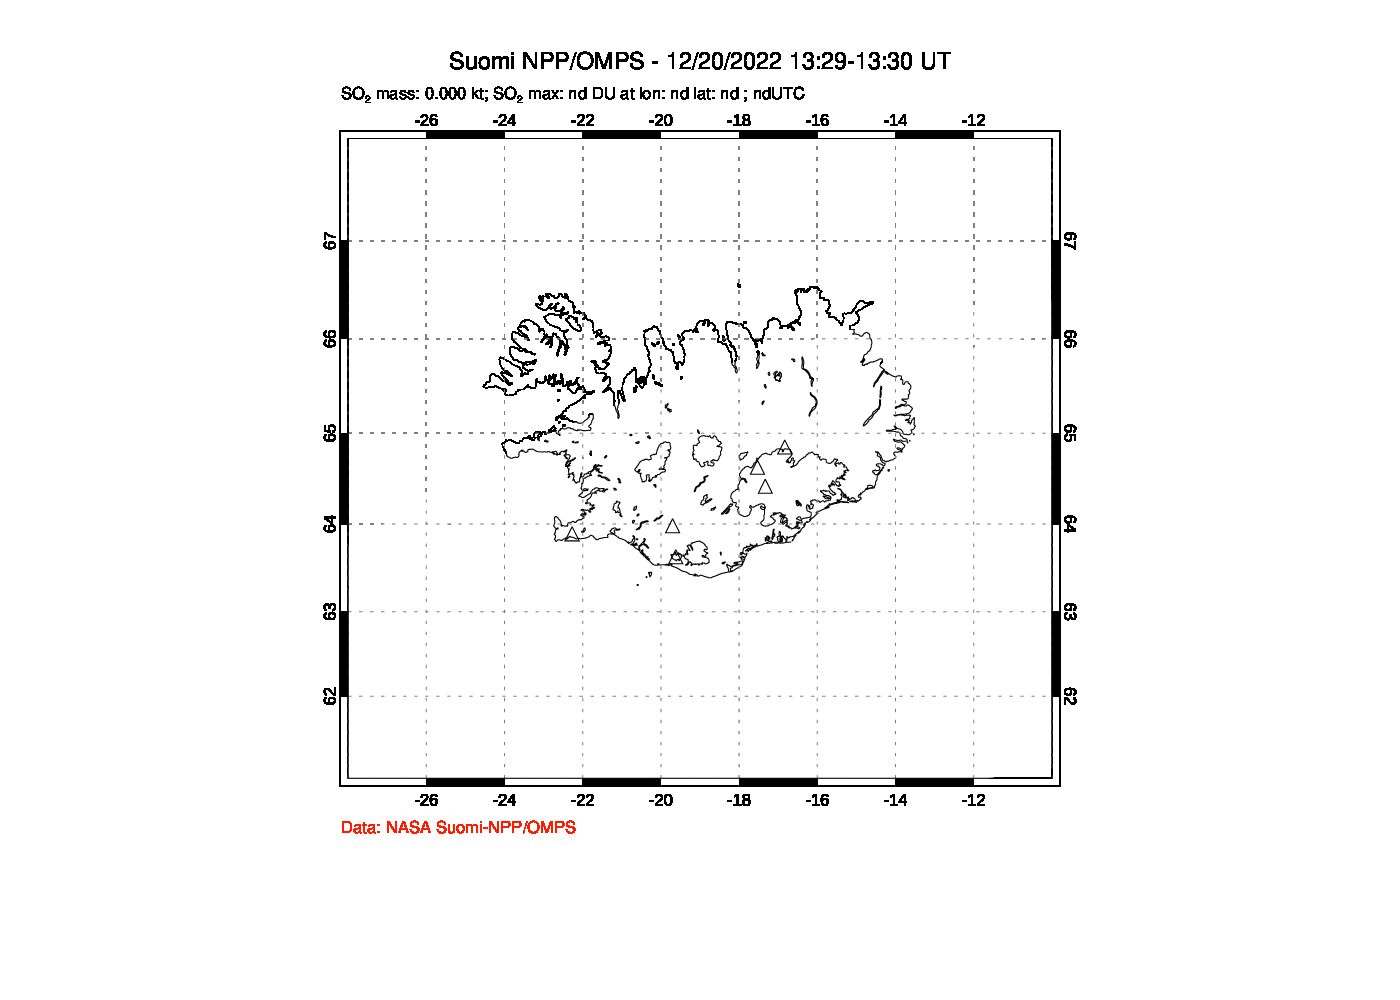 A sulfur dioxide image over Iceland on Dec 20, 2022.